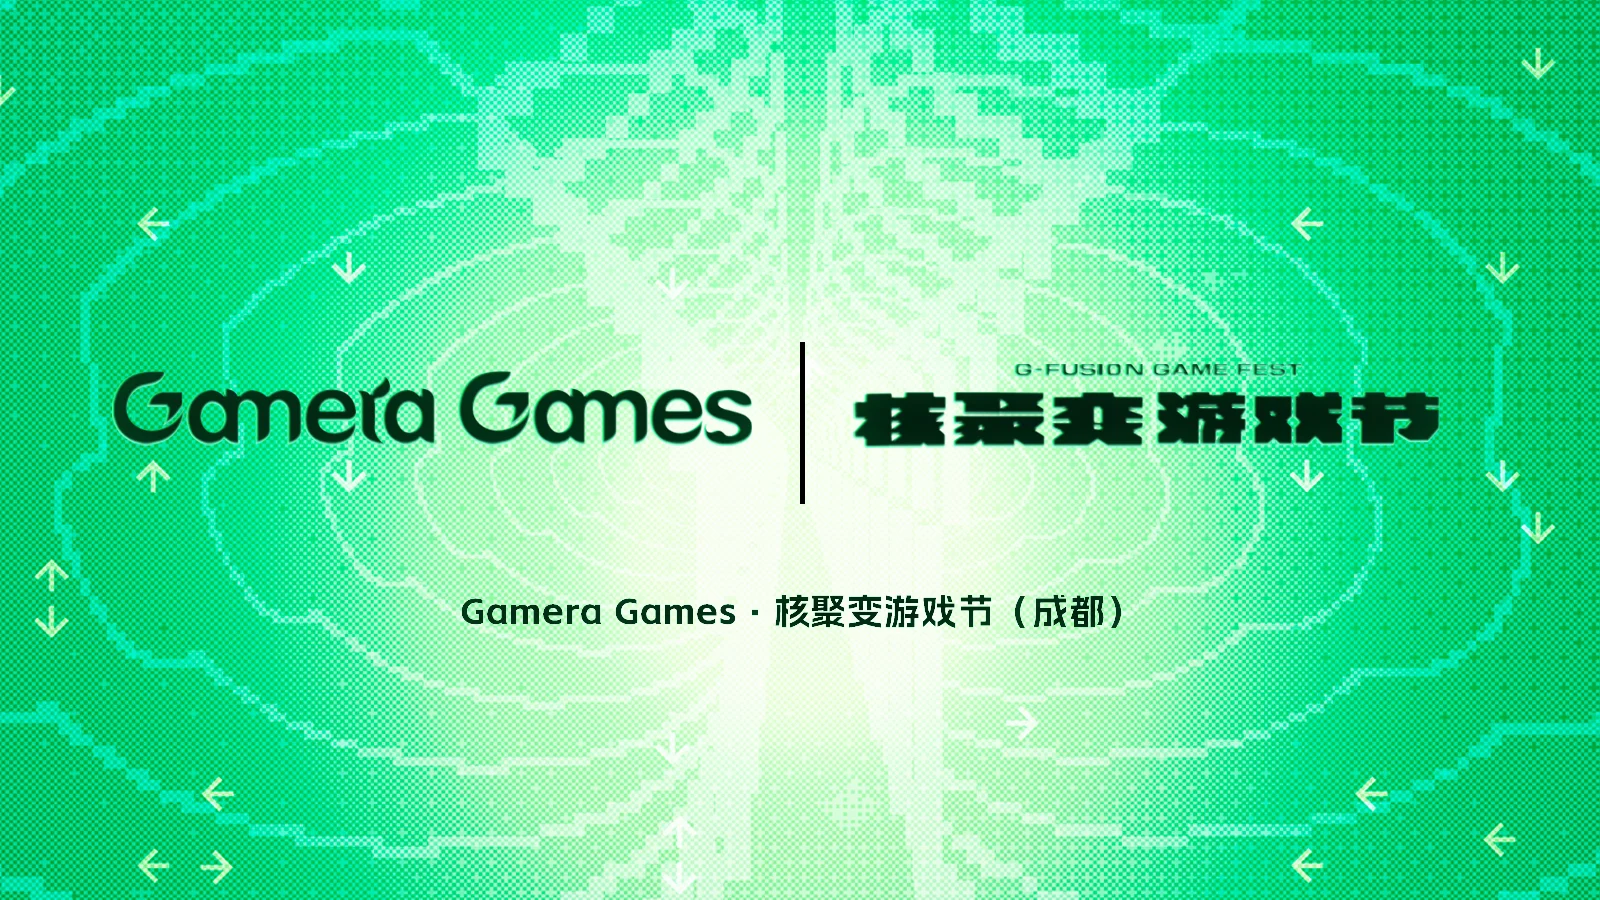 全新周边、游戏试玩：Gamera Games「核聚变游戏节」2023成都站展台介绍